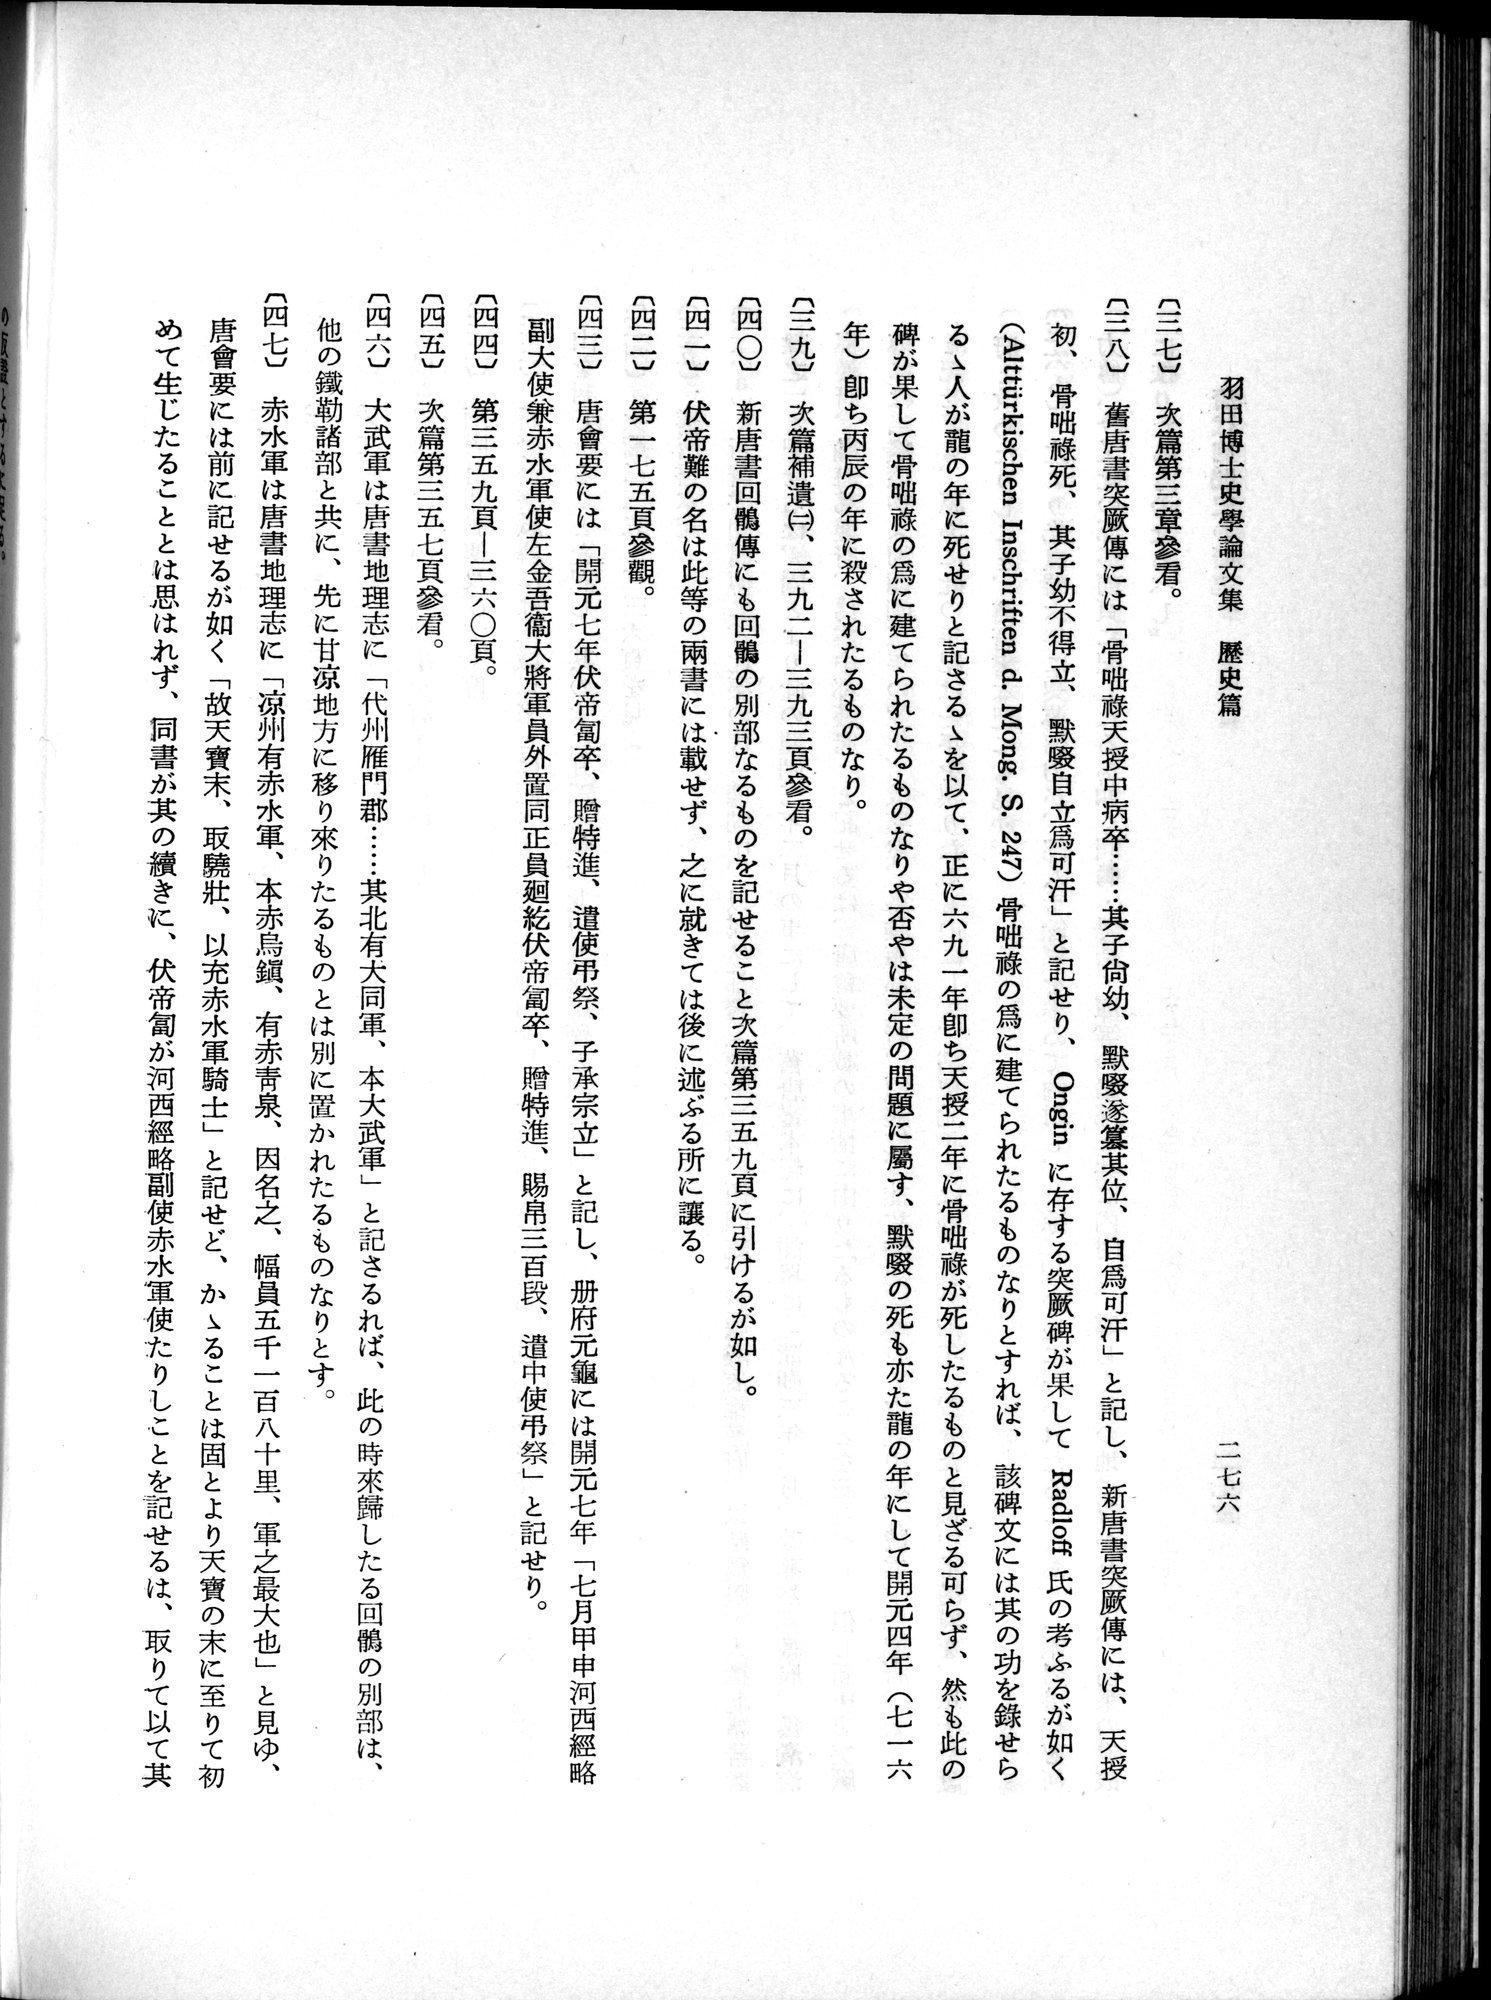 羽田博士史学論文集 : vol.1 / Page 314 (Grayscale High Resolution Image)